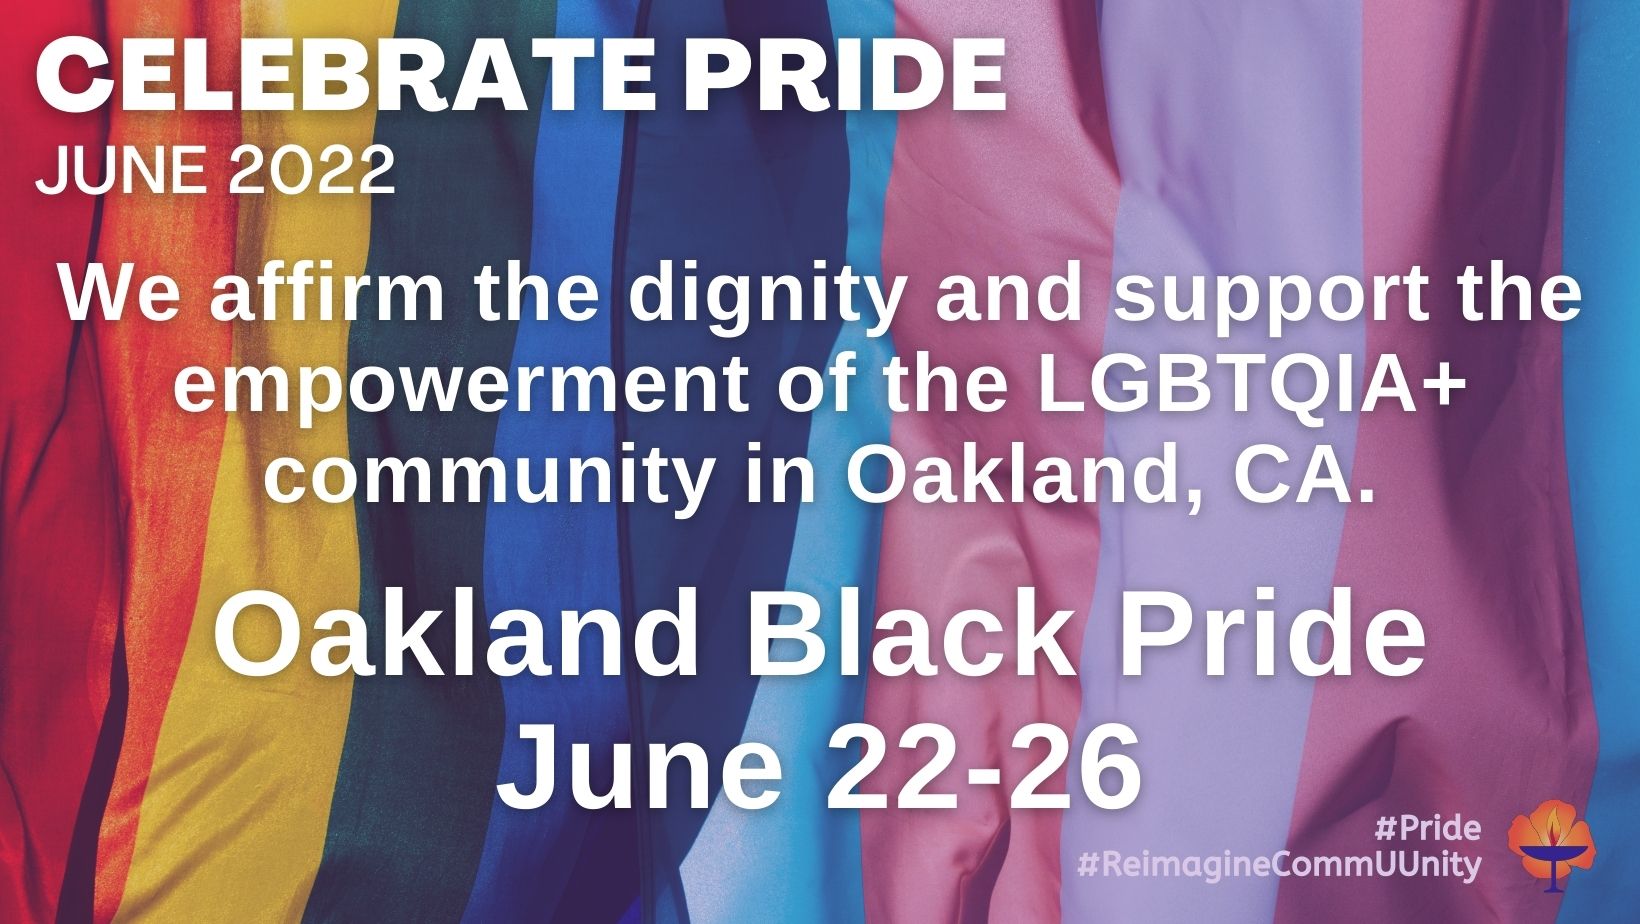 Pride 2022 Oakland Black Pride Unitarian Universalist Justice